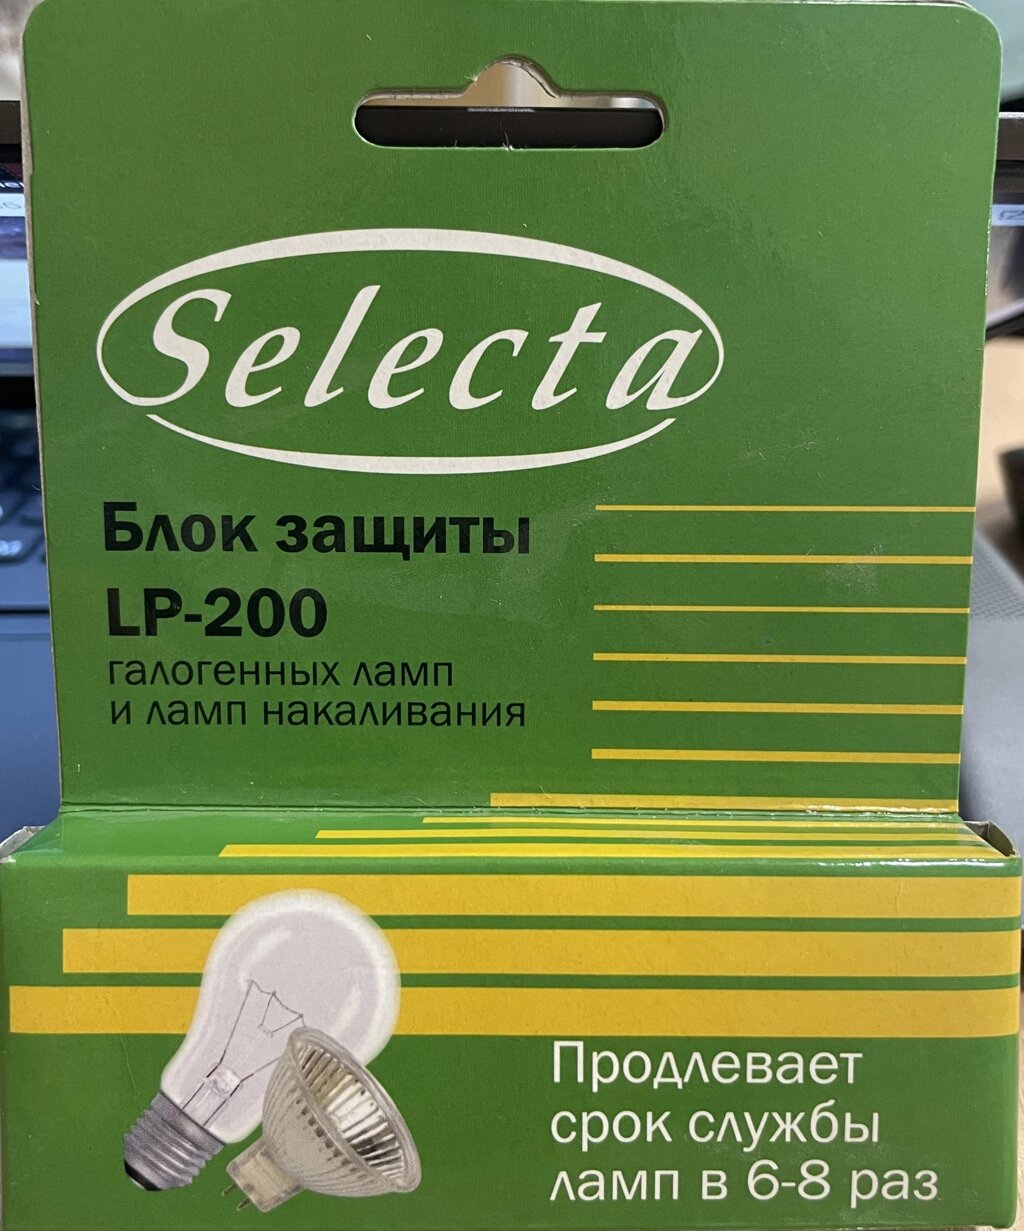 Блок защиты для галогенных ламп LP-200 Selecta от компании ИП Набока В.М. - фото 1